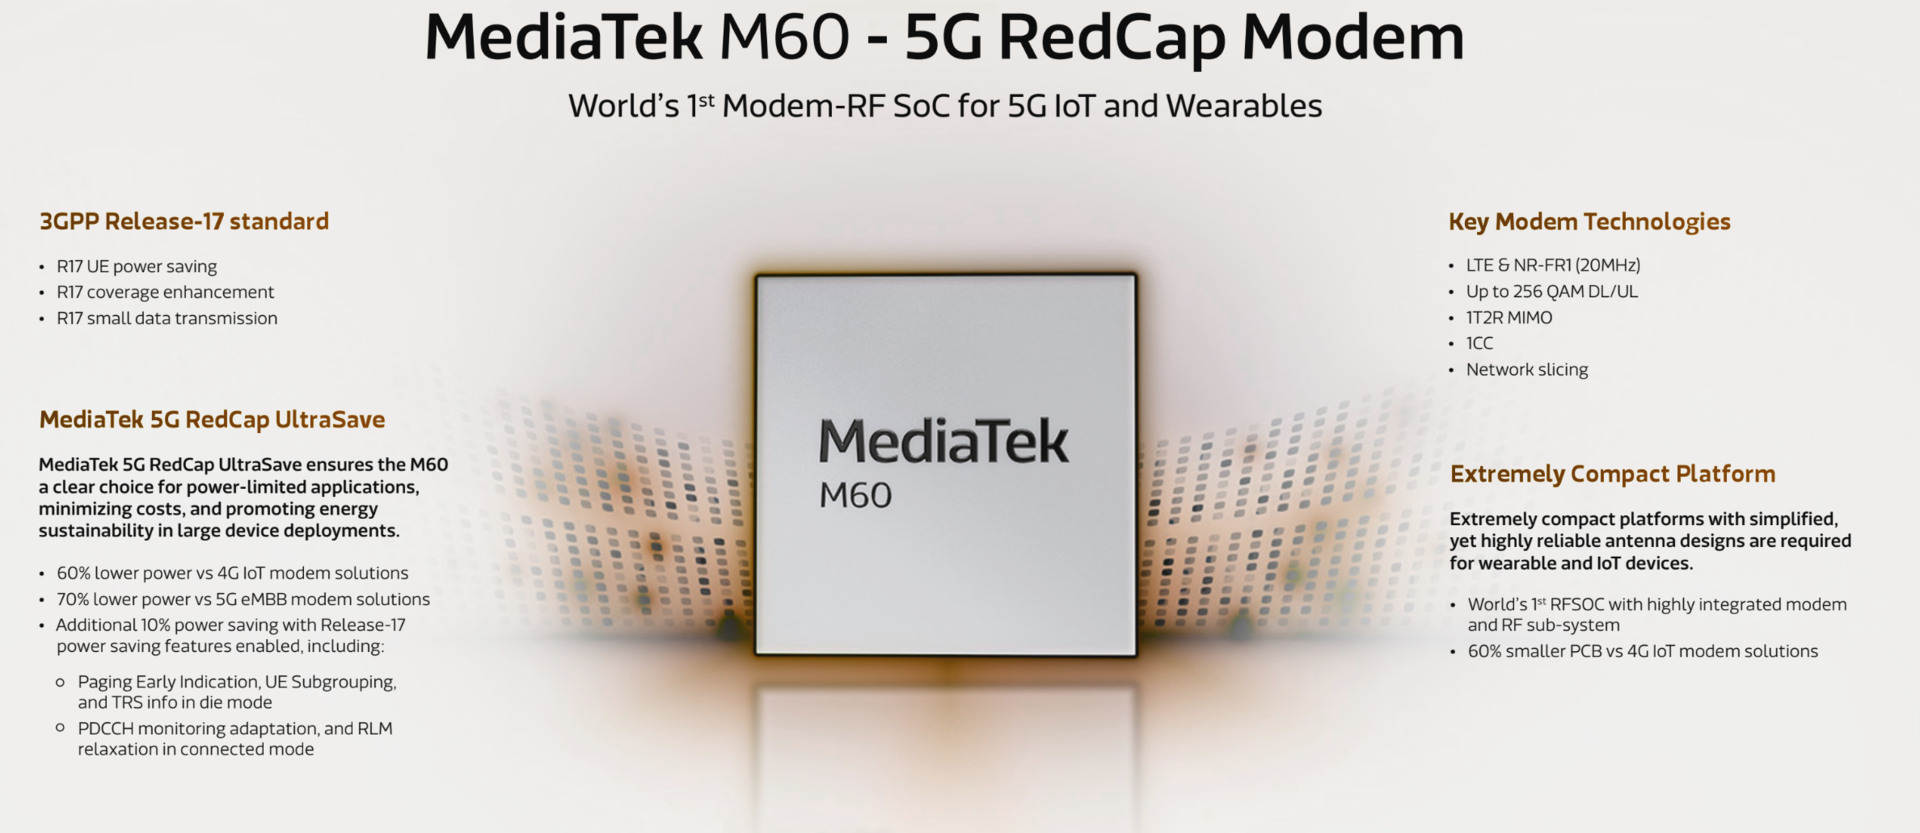 csm_MediaTek-M60-RedCap-_906db9e409.png